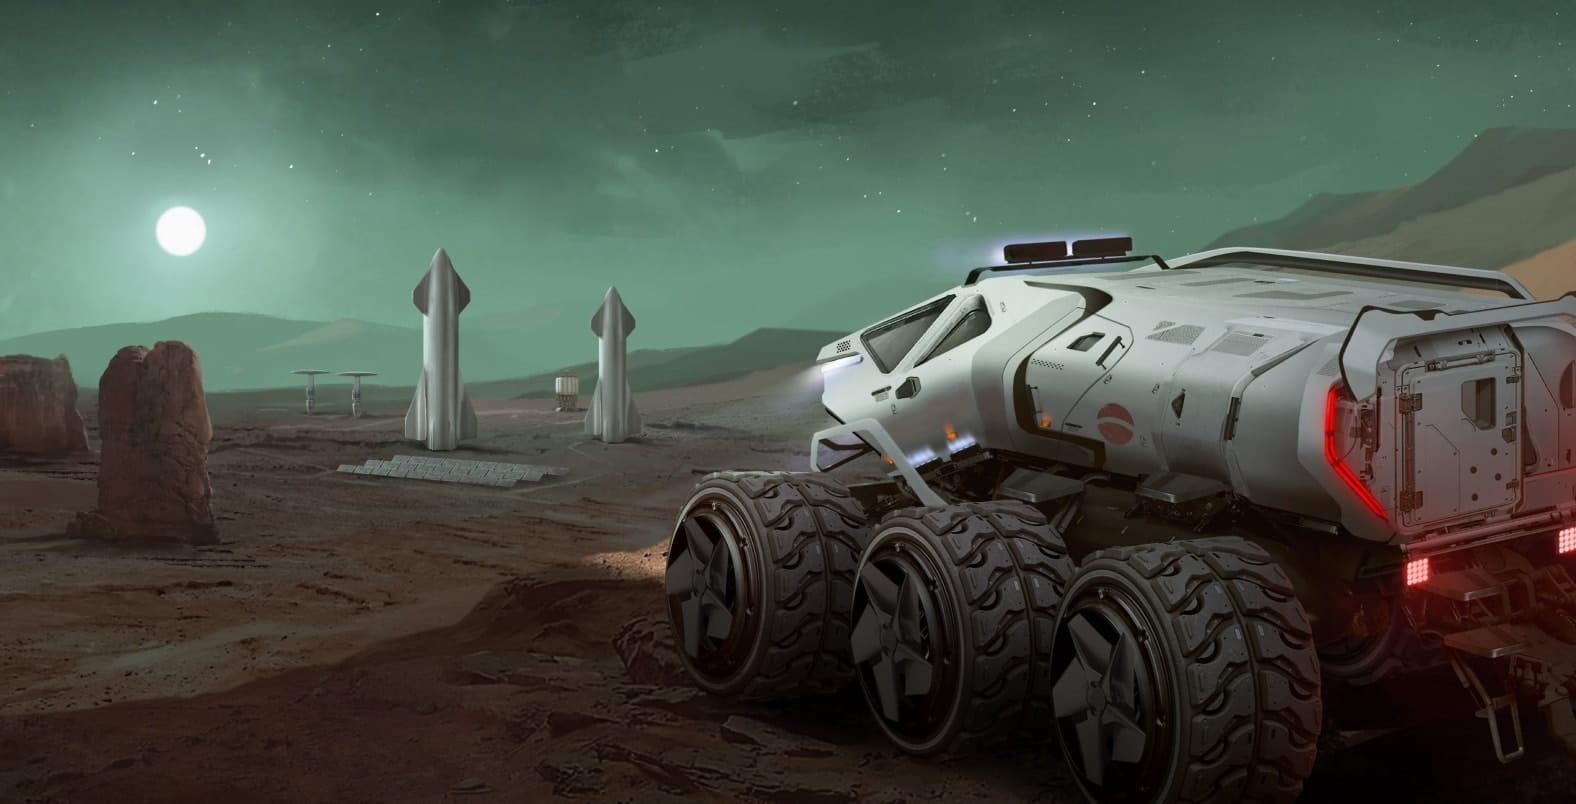 Colonize Mars, une simulation blockchain basée sur WAX, combine stratégie, exploration et NFT pour créer une expérience captivante de construction de la vie sur la planète rouge.